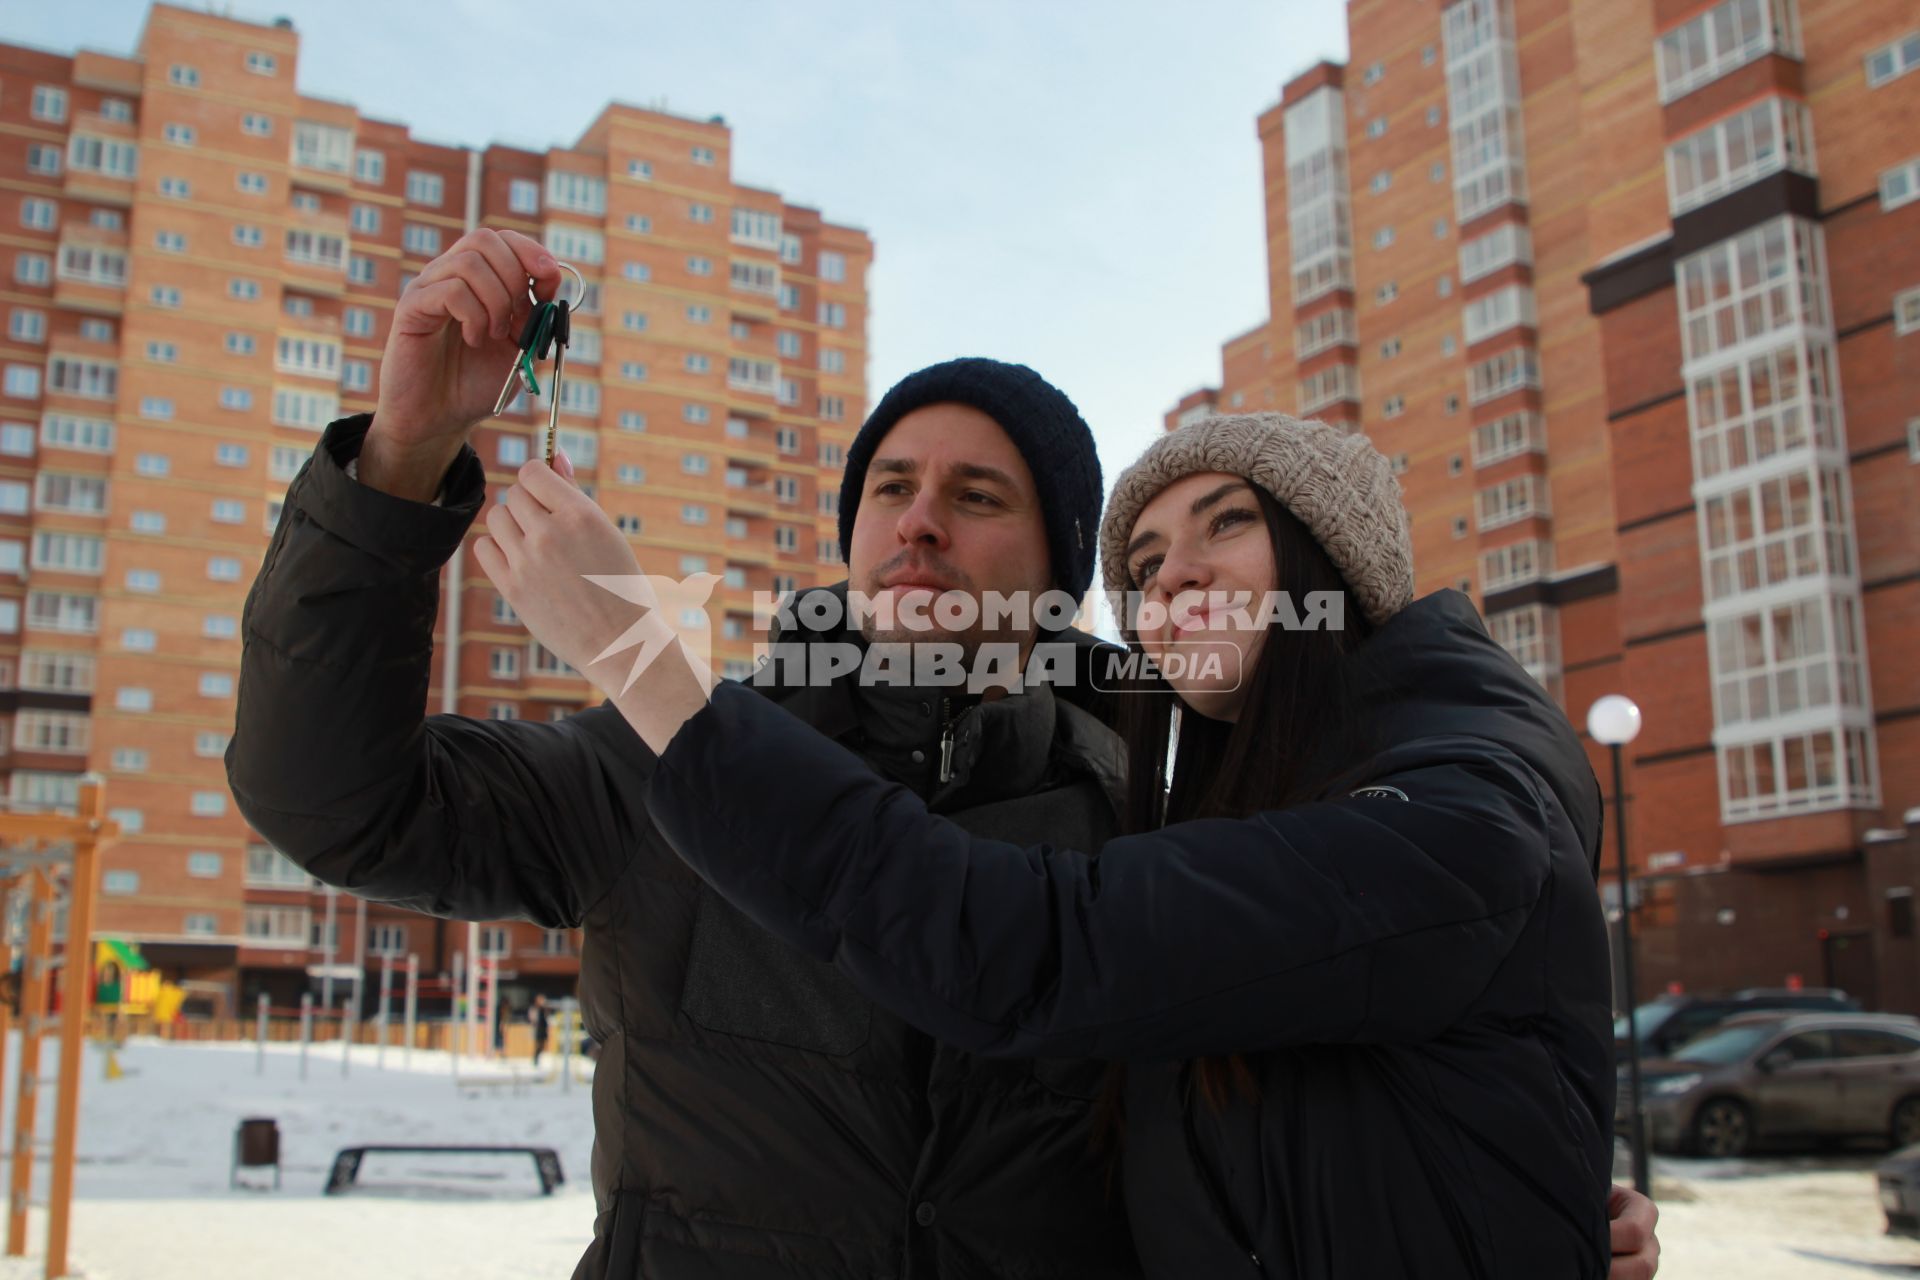 Иркутск. Молодой человек держит в руке ключи от квартиры в новостройке.